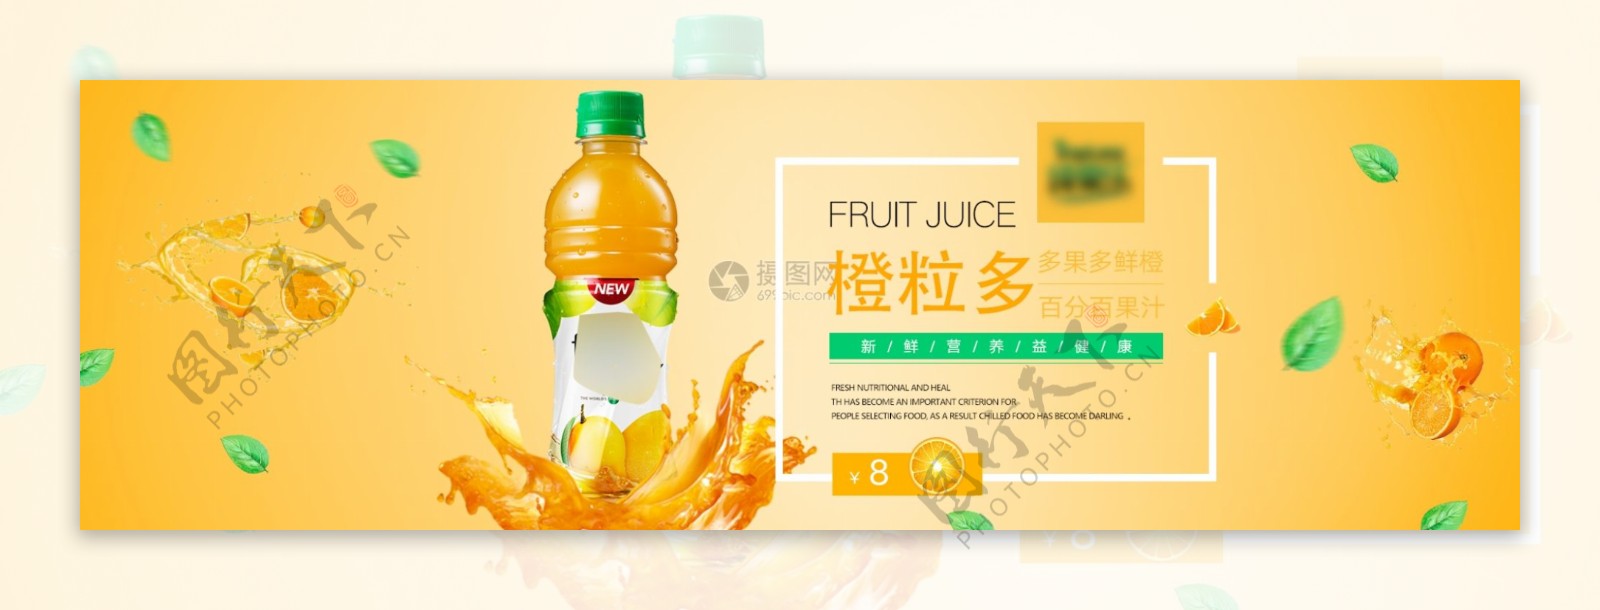 美味橙汁饮料淘宝banner